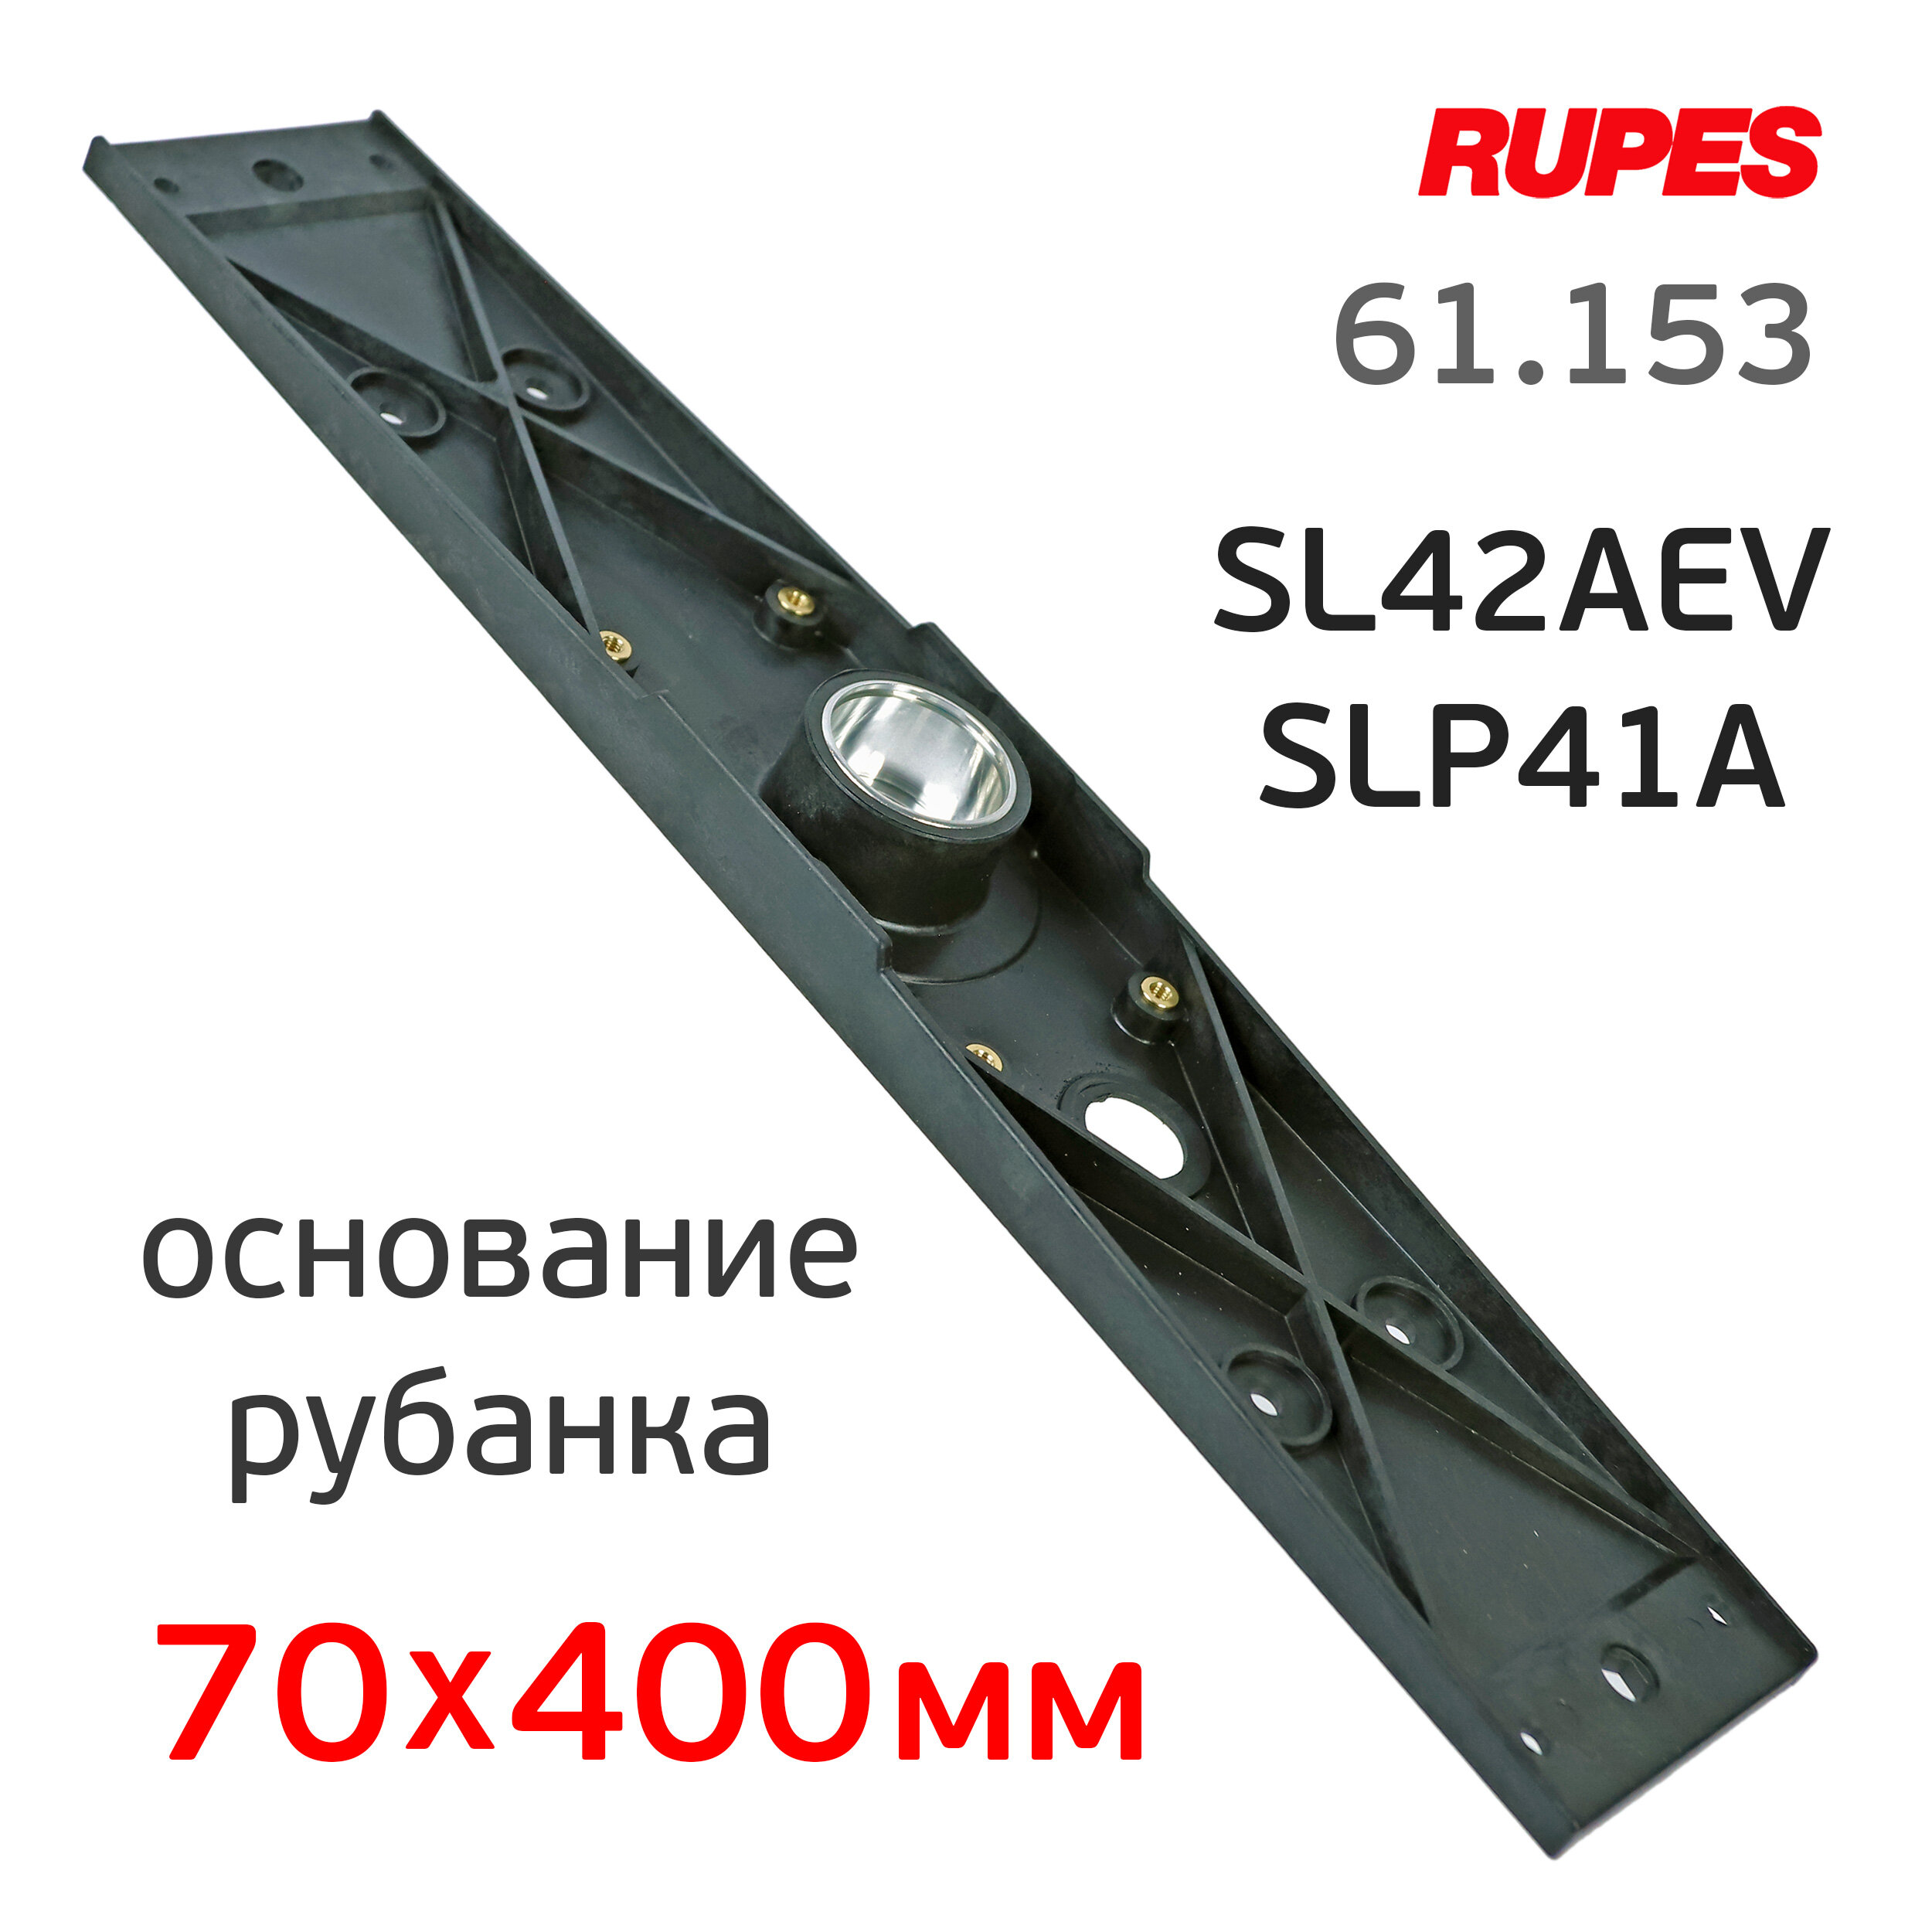 Основание для рубанка Rupes (70х400мм) SL42AEV и SLP41A